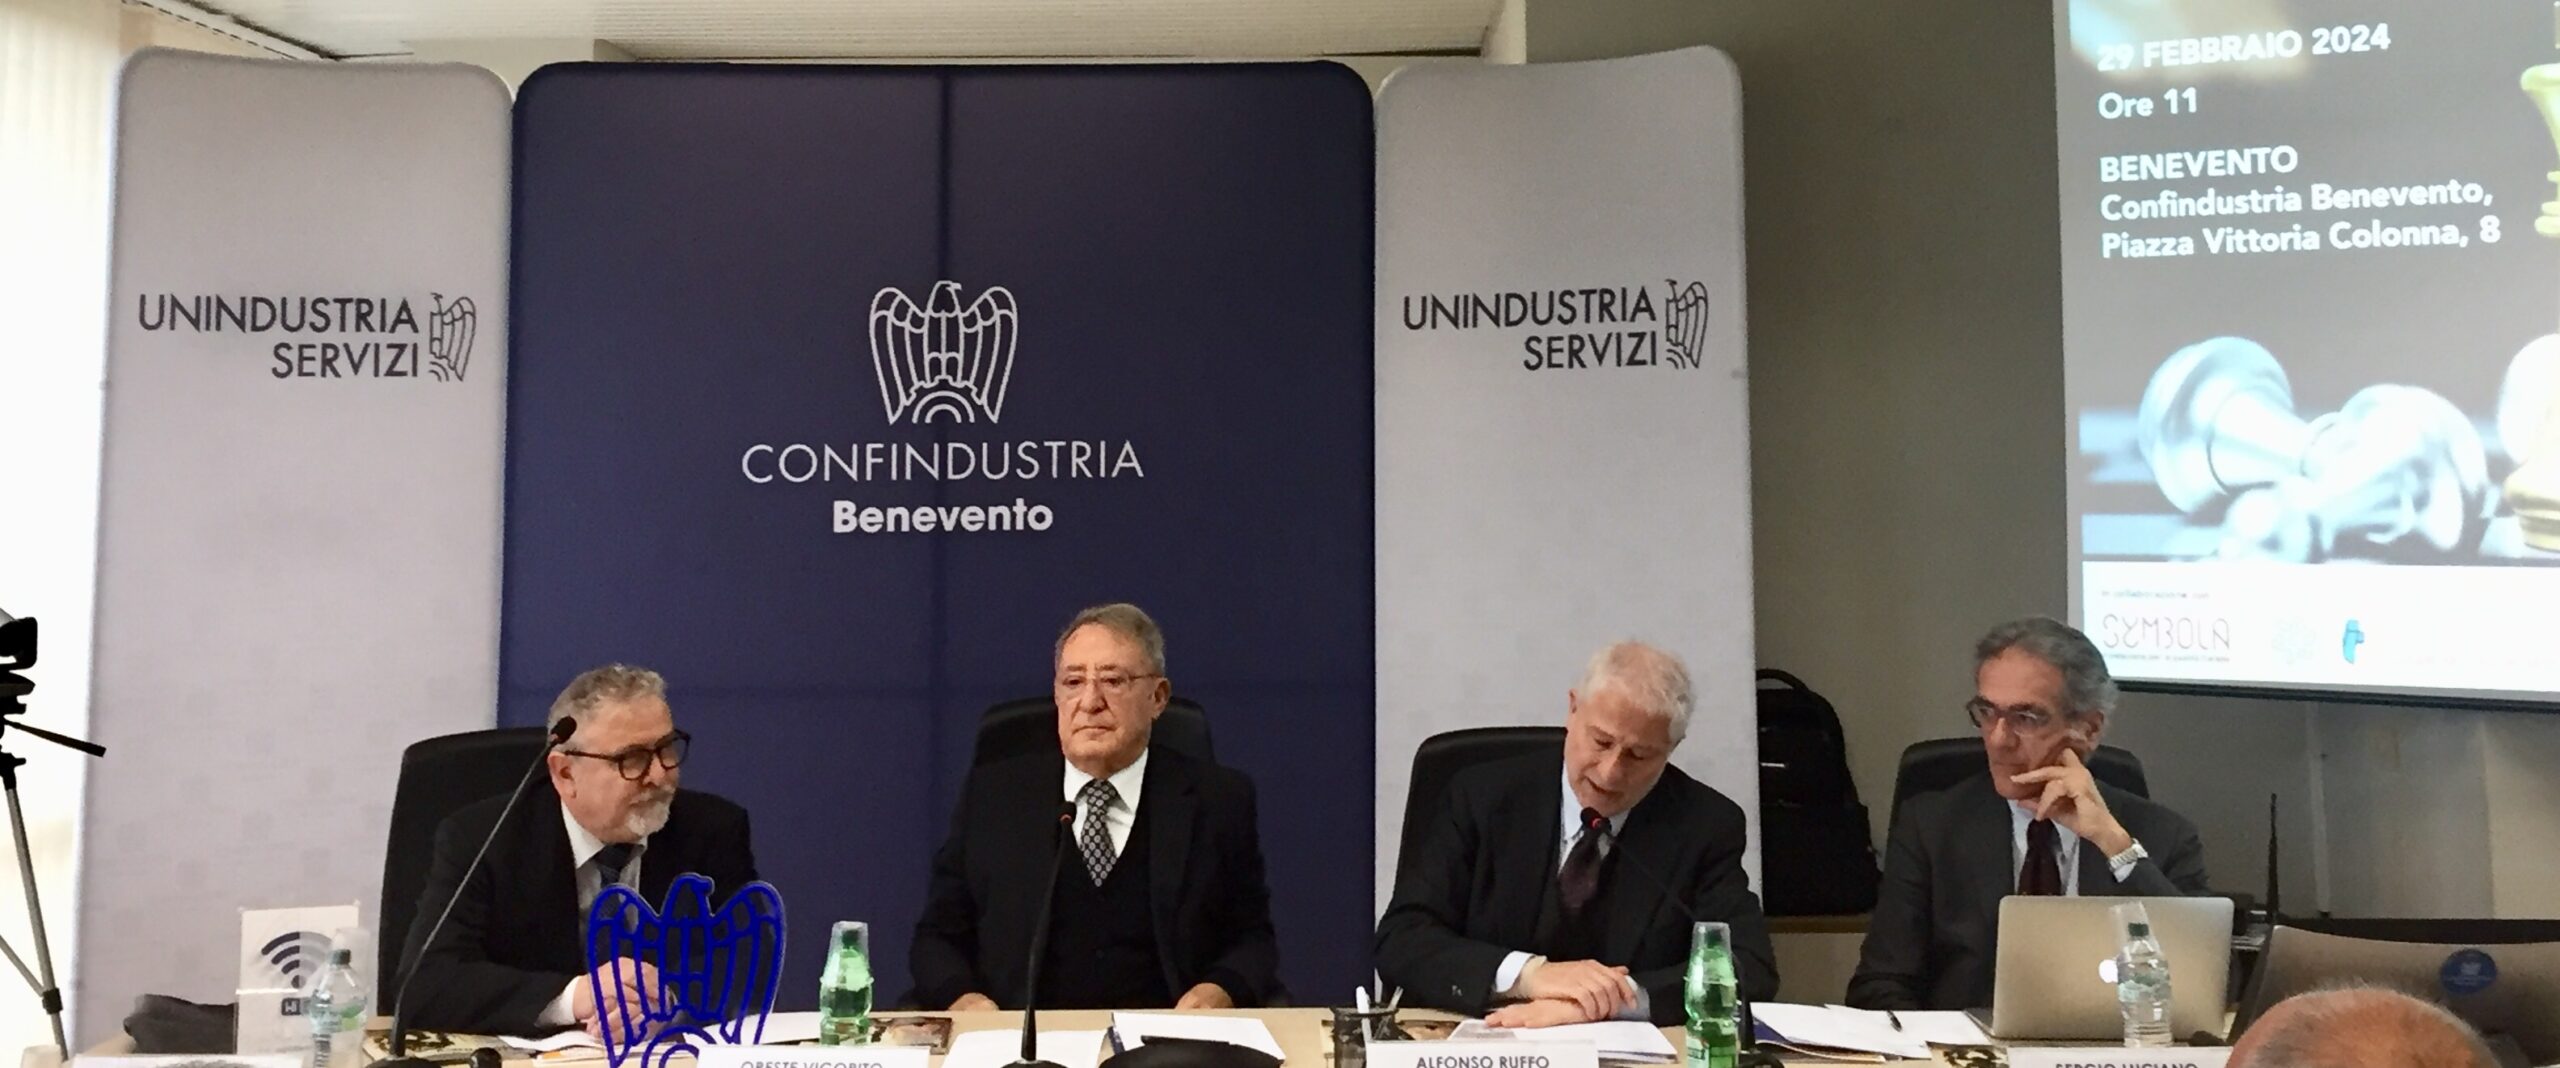 “I Fenomeni di Economy” la presentazione delle imprese virtuose a Confindustria Benevento